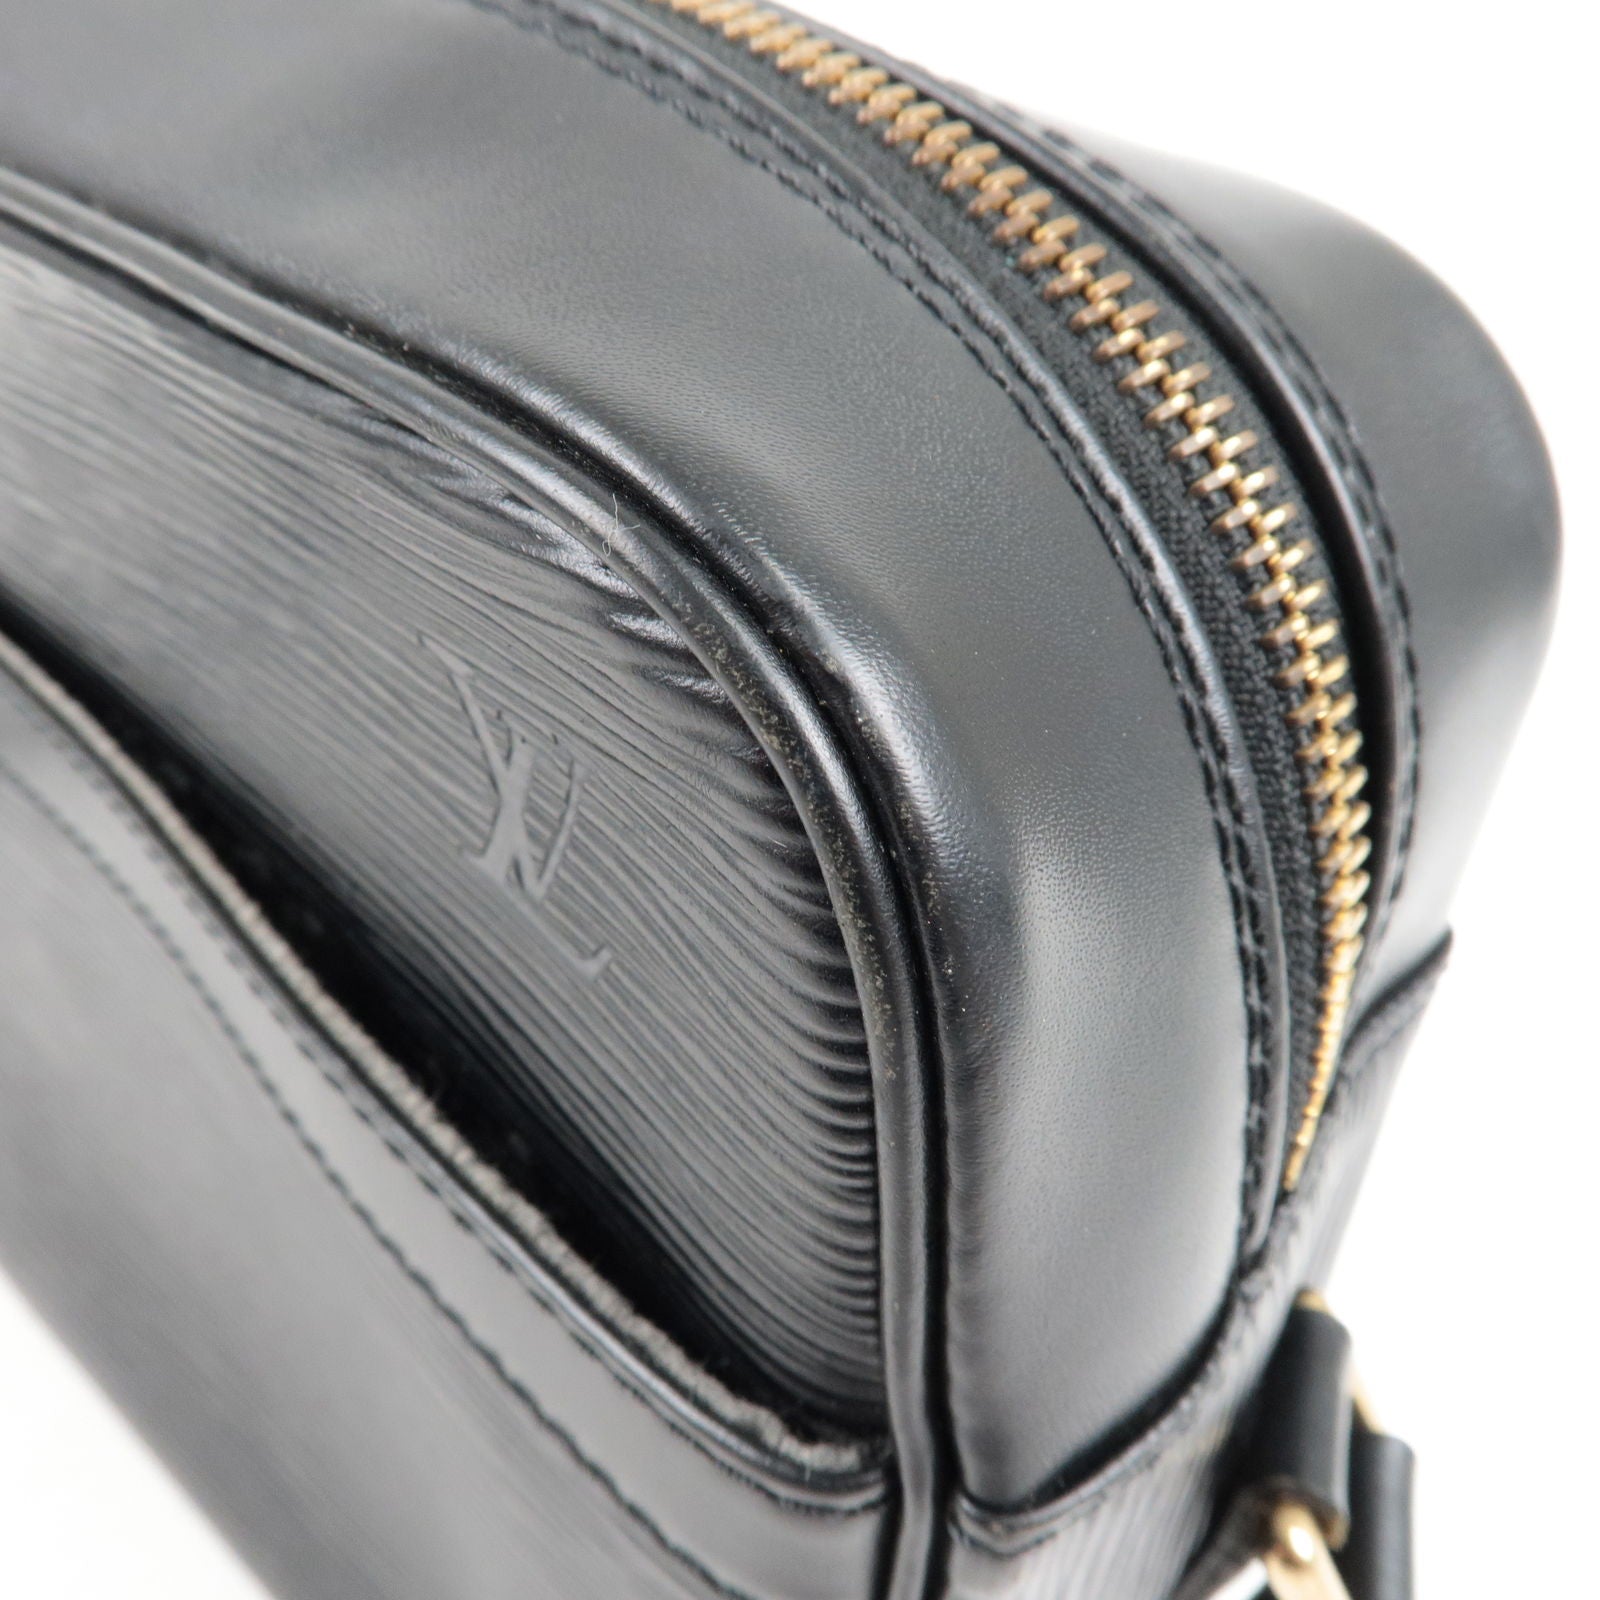 LOUIS VUITTON, a black Epi leather Trocadero shoulder bag